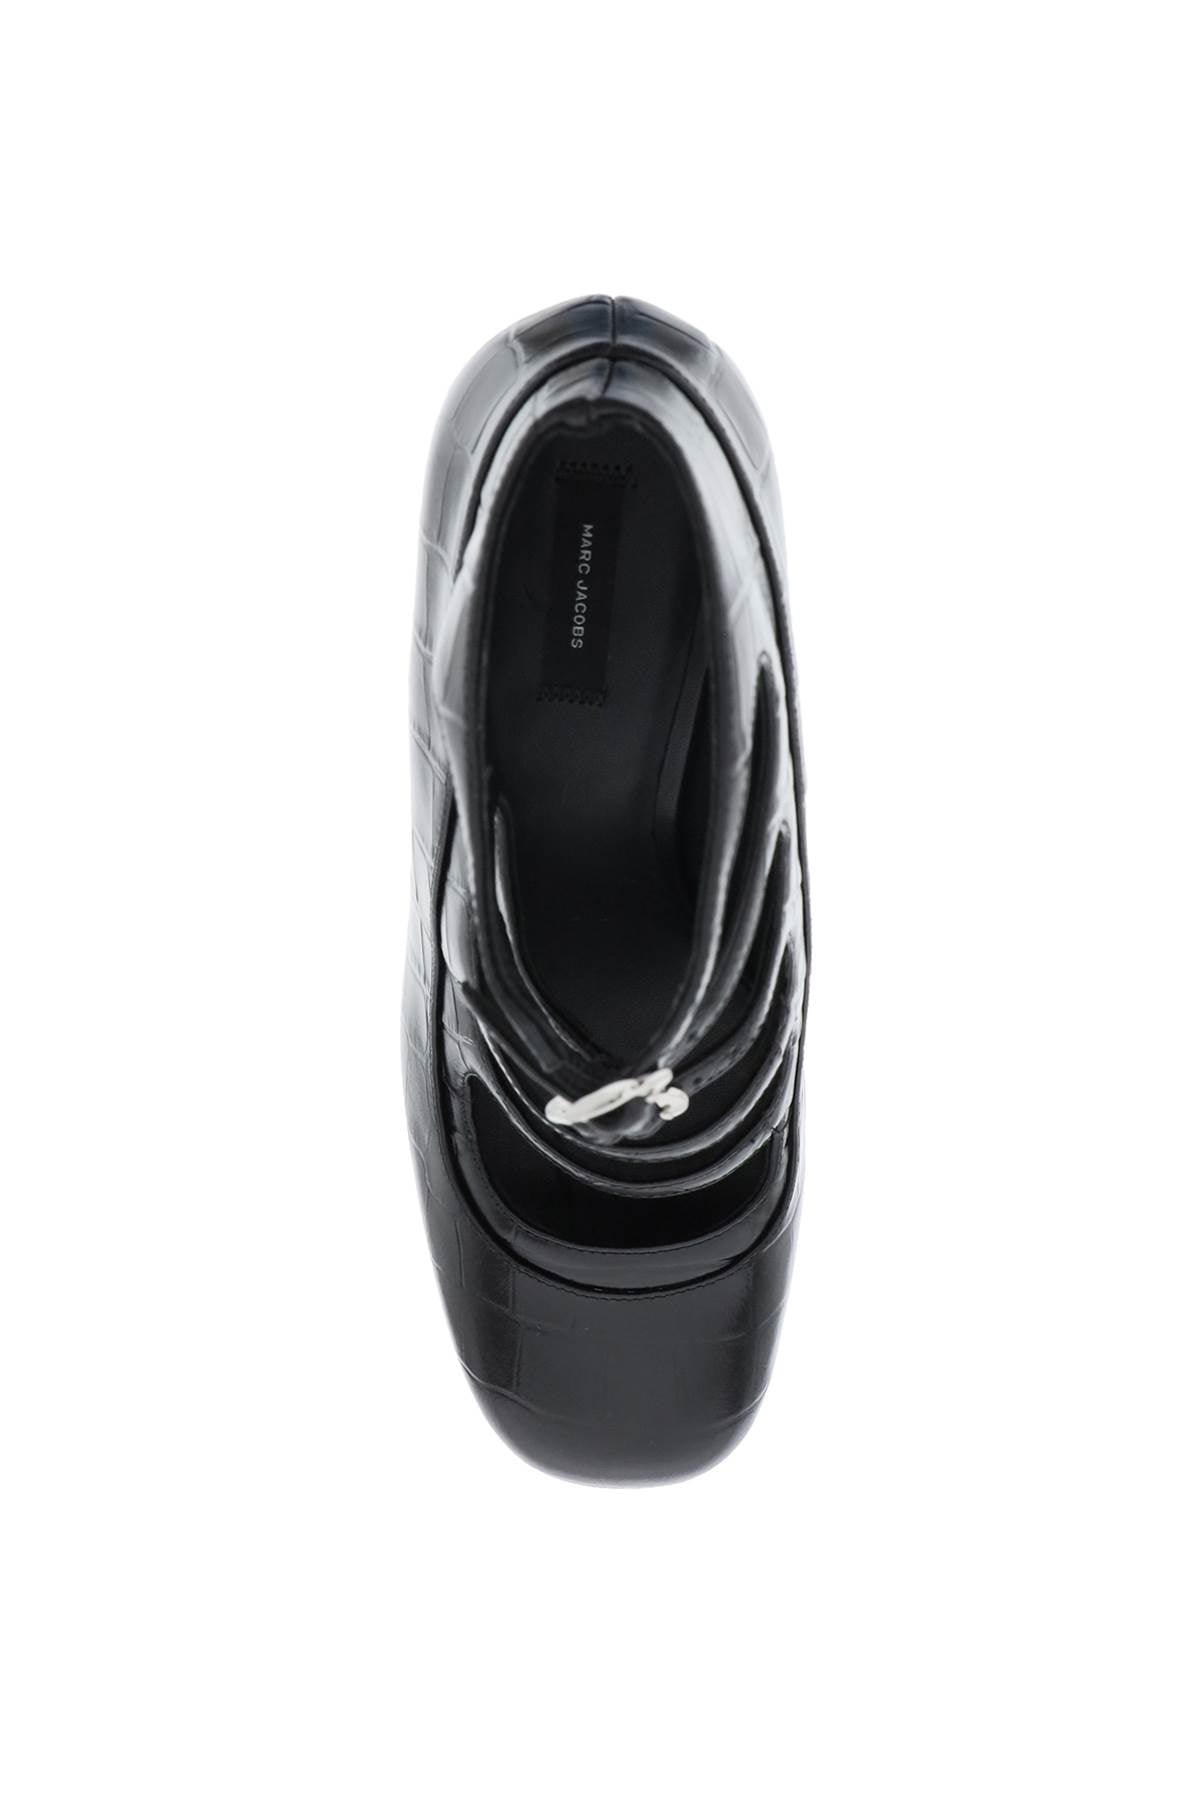 Giày Ankle Croc Nguyên Bản - Giày phụ nữ màu đen cắt khoét chi tiết với Gót cao và Đế đơn